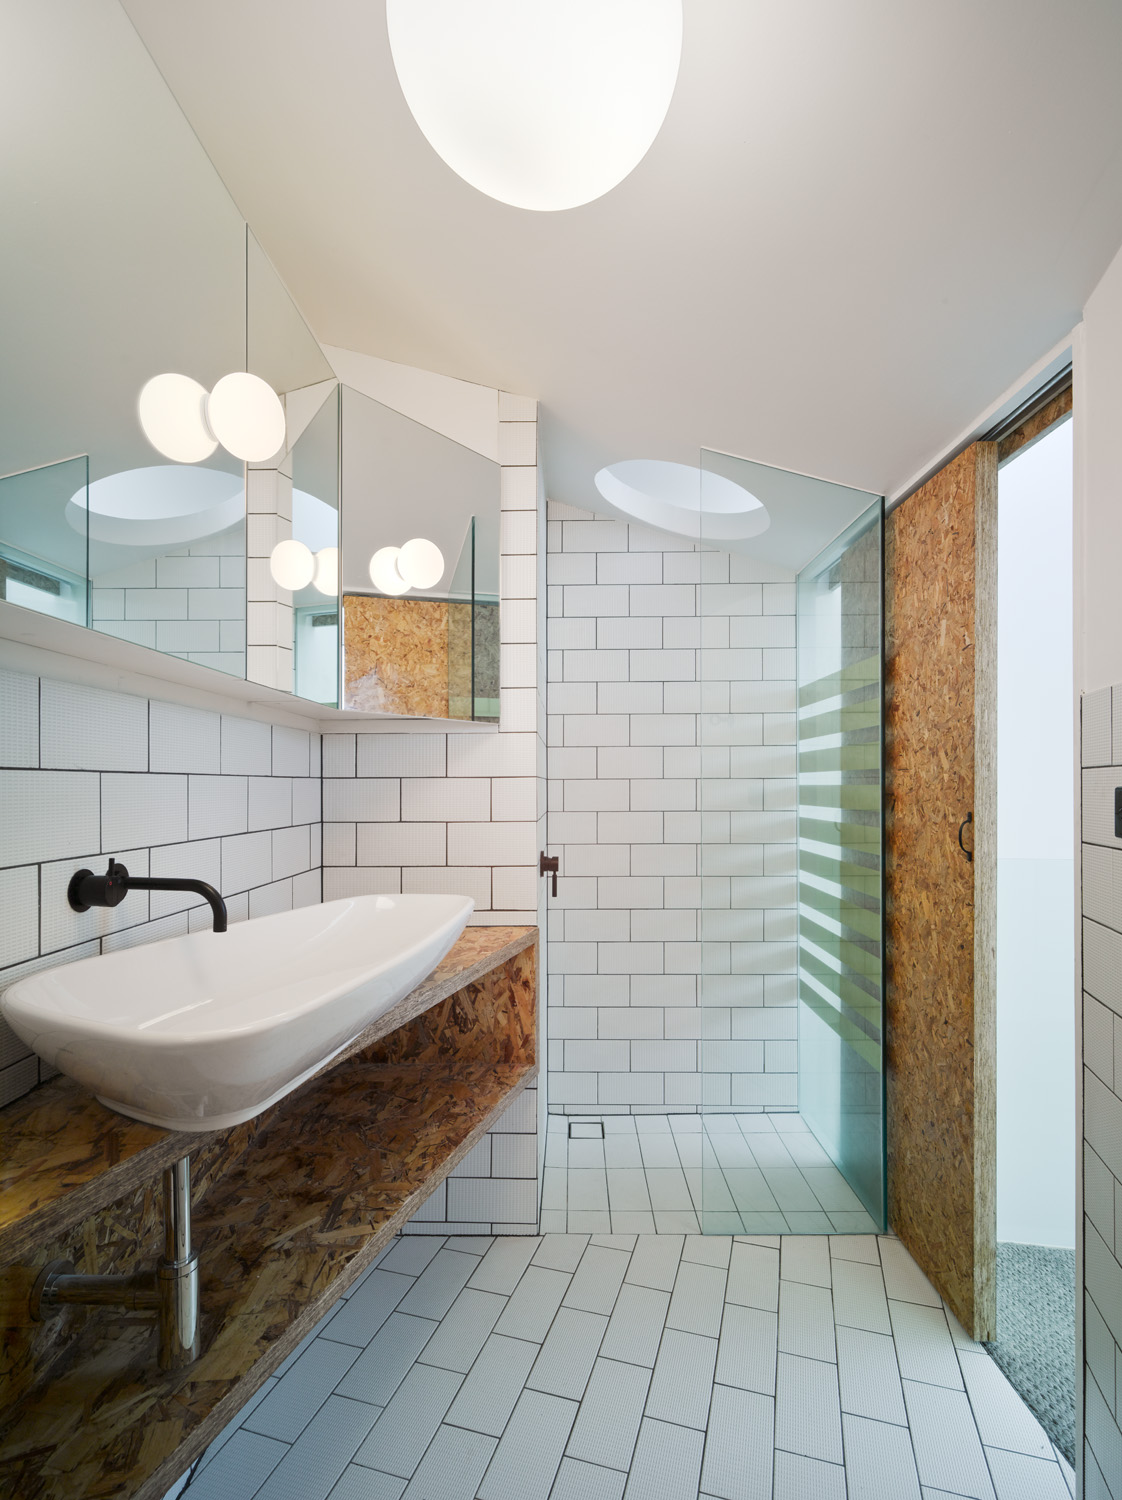 Shower house. Интерьер ванной 2021. Ванна интерьер ОСБ. Ванная комната из пеноблоков. Идеальная плитка в ванную.